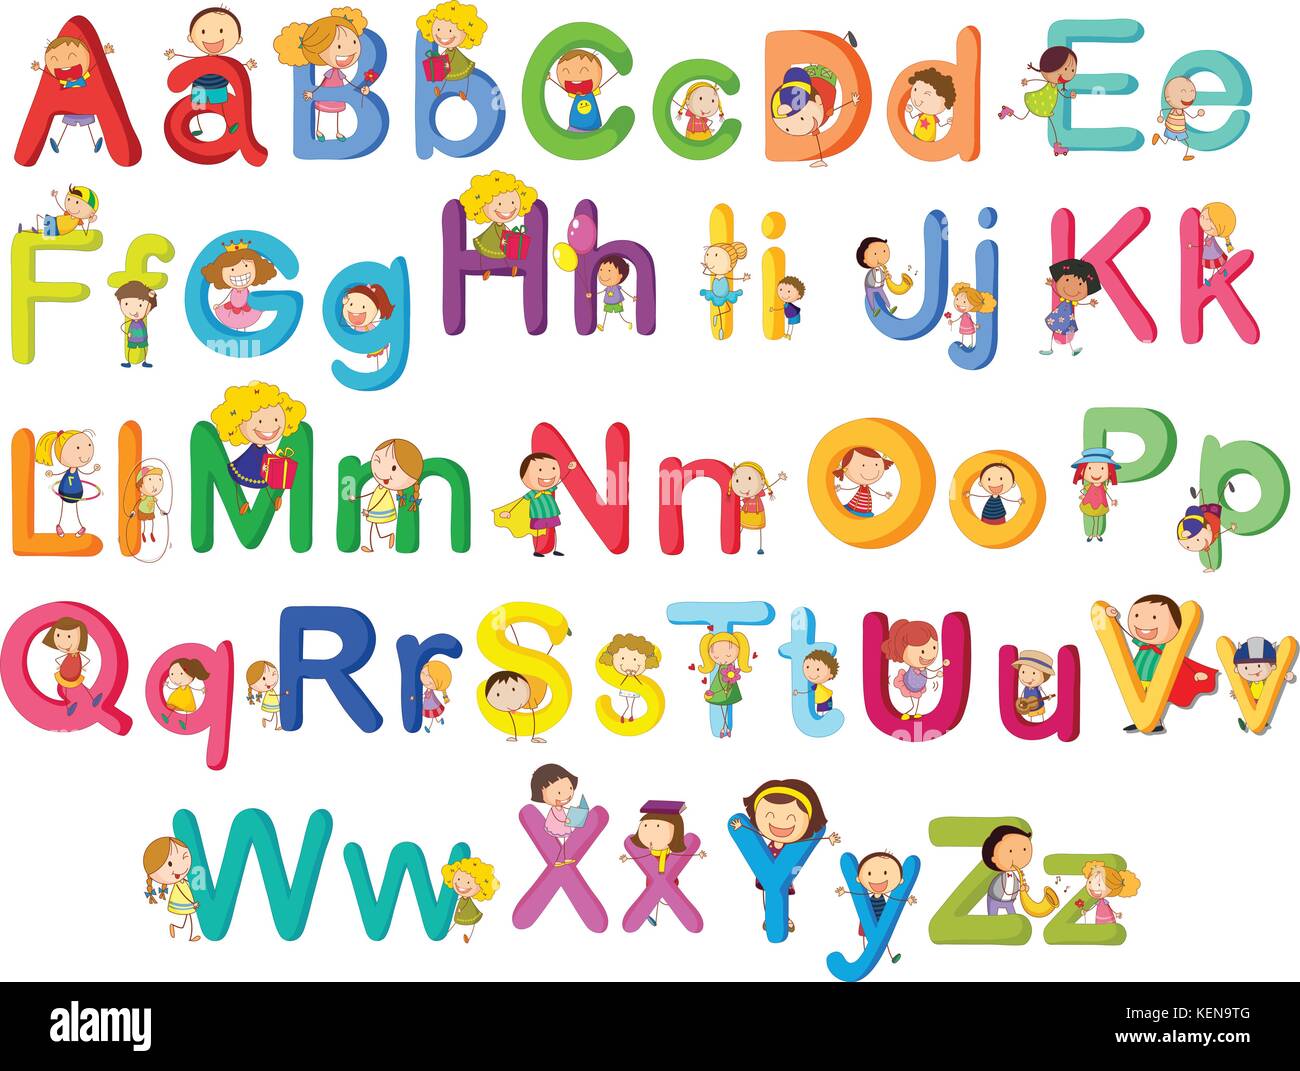 Illustrazione delle lettere dell'alfabeto su sfondo bianco Illustrazione Vettoriale